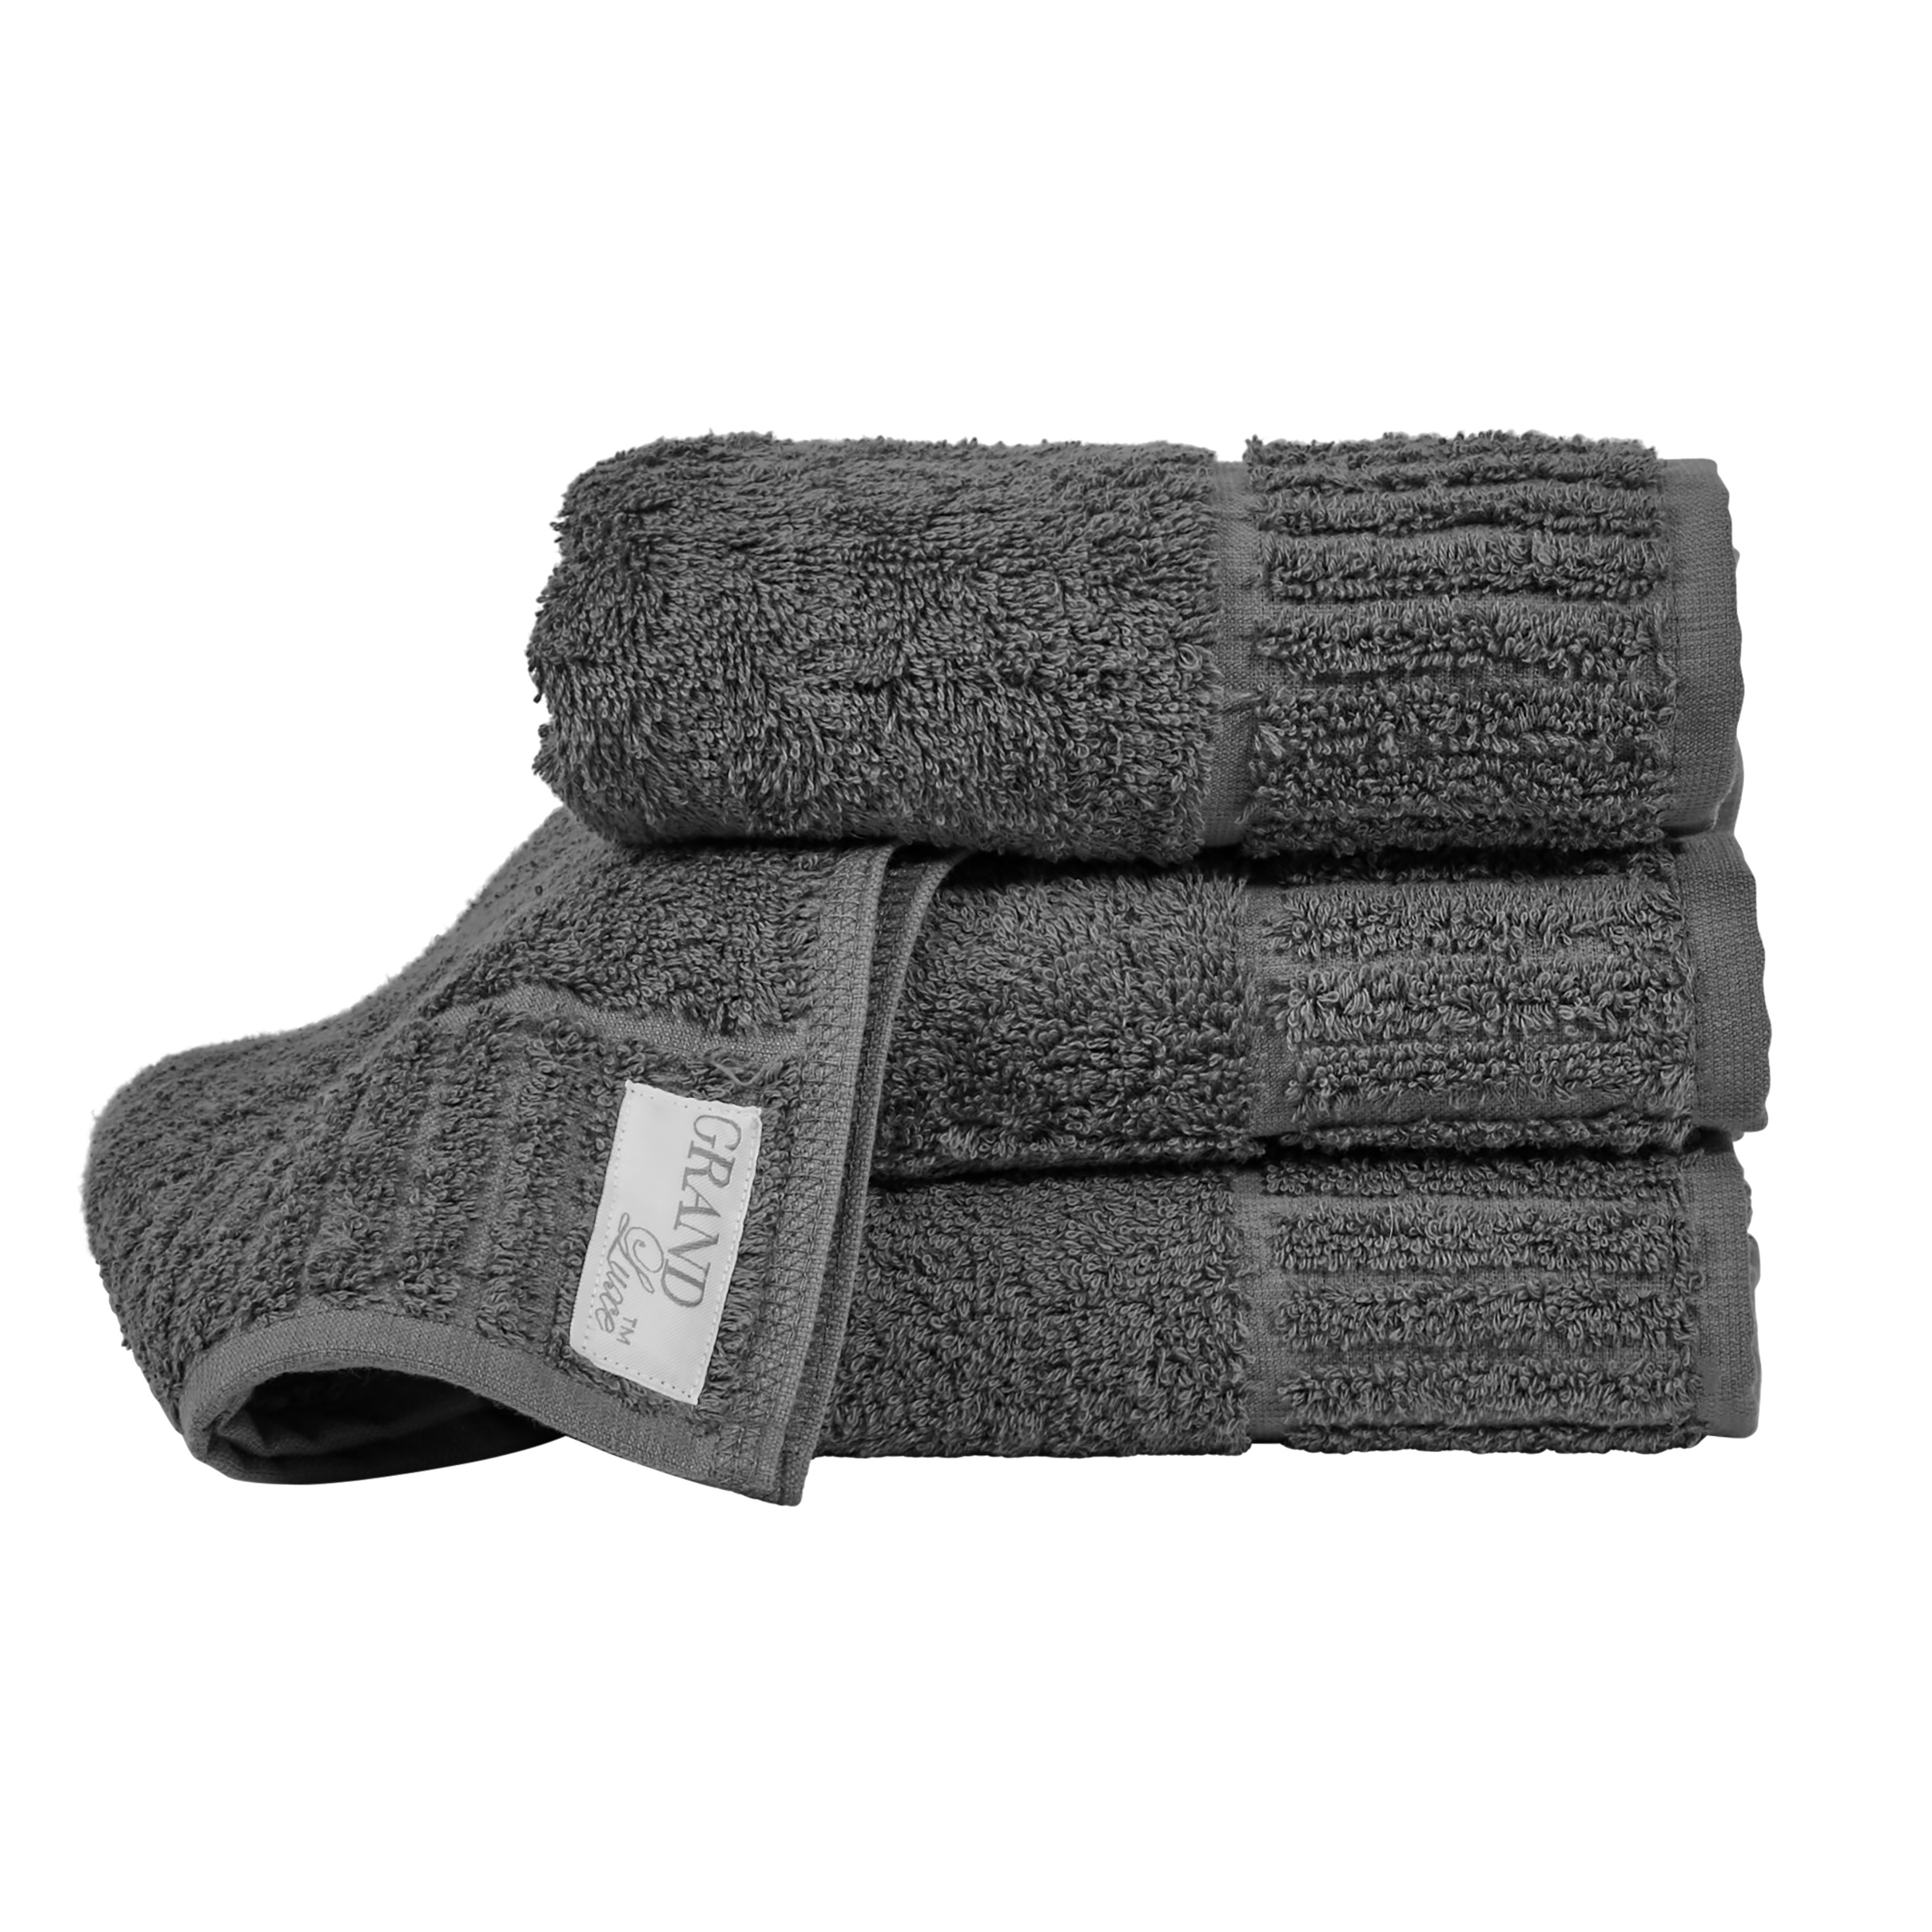 Towel Grand Luxe 50x70 cm 500 g, Kashmir Gray 